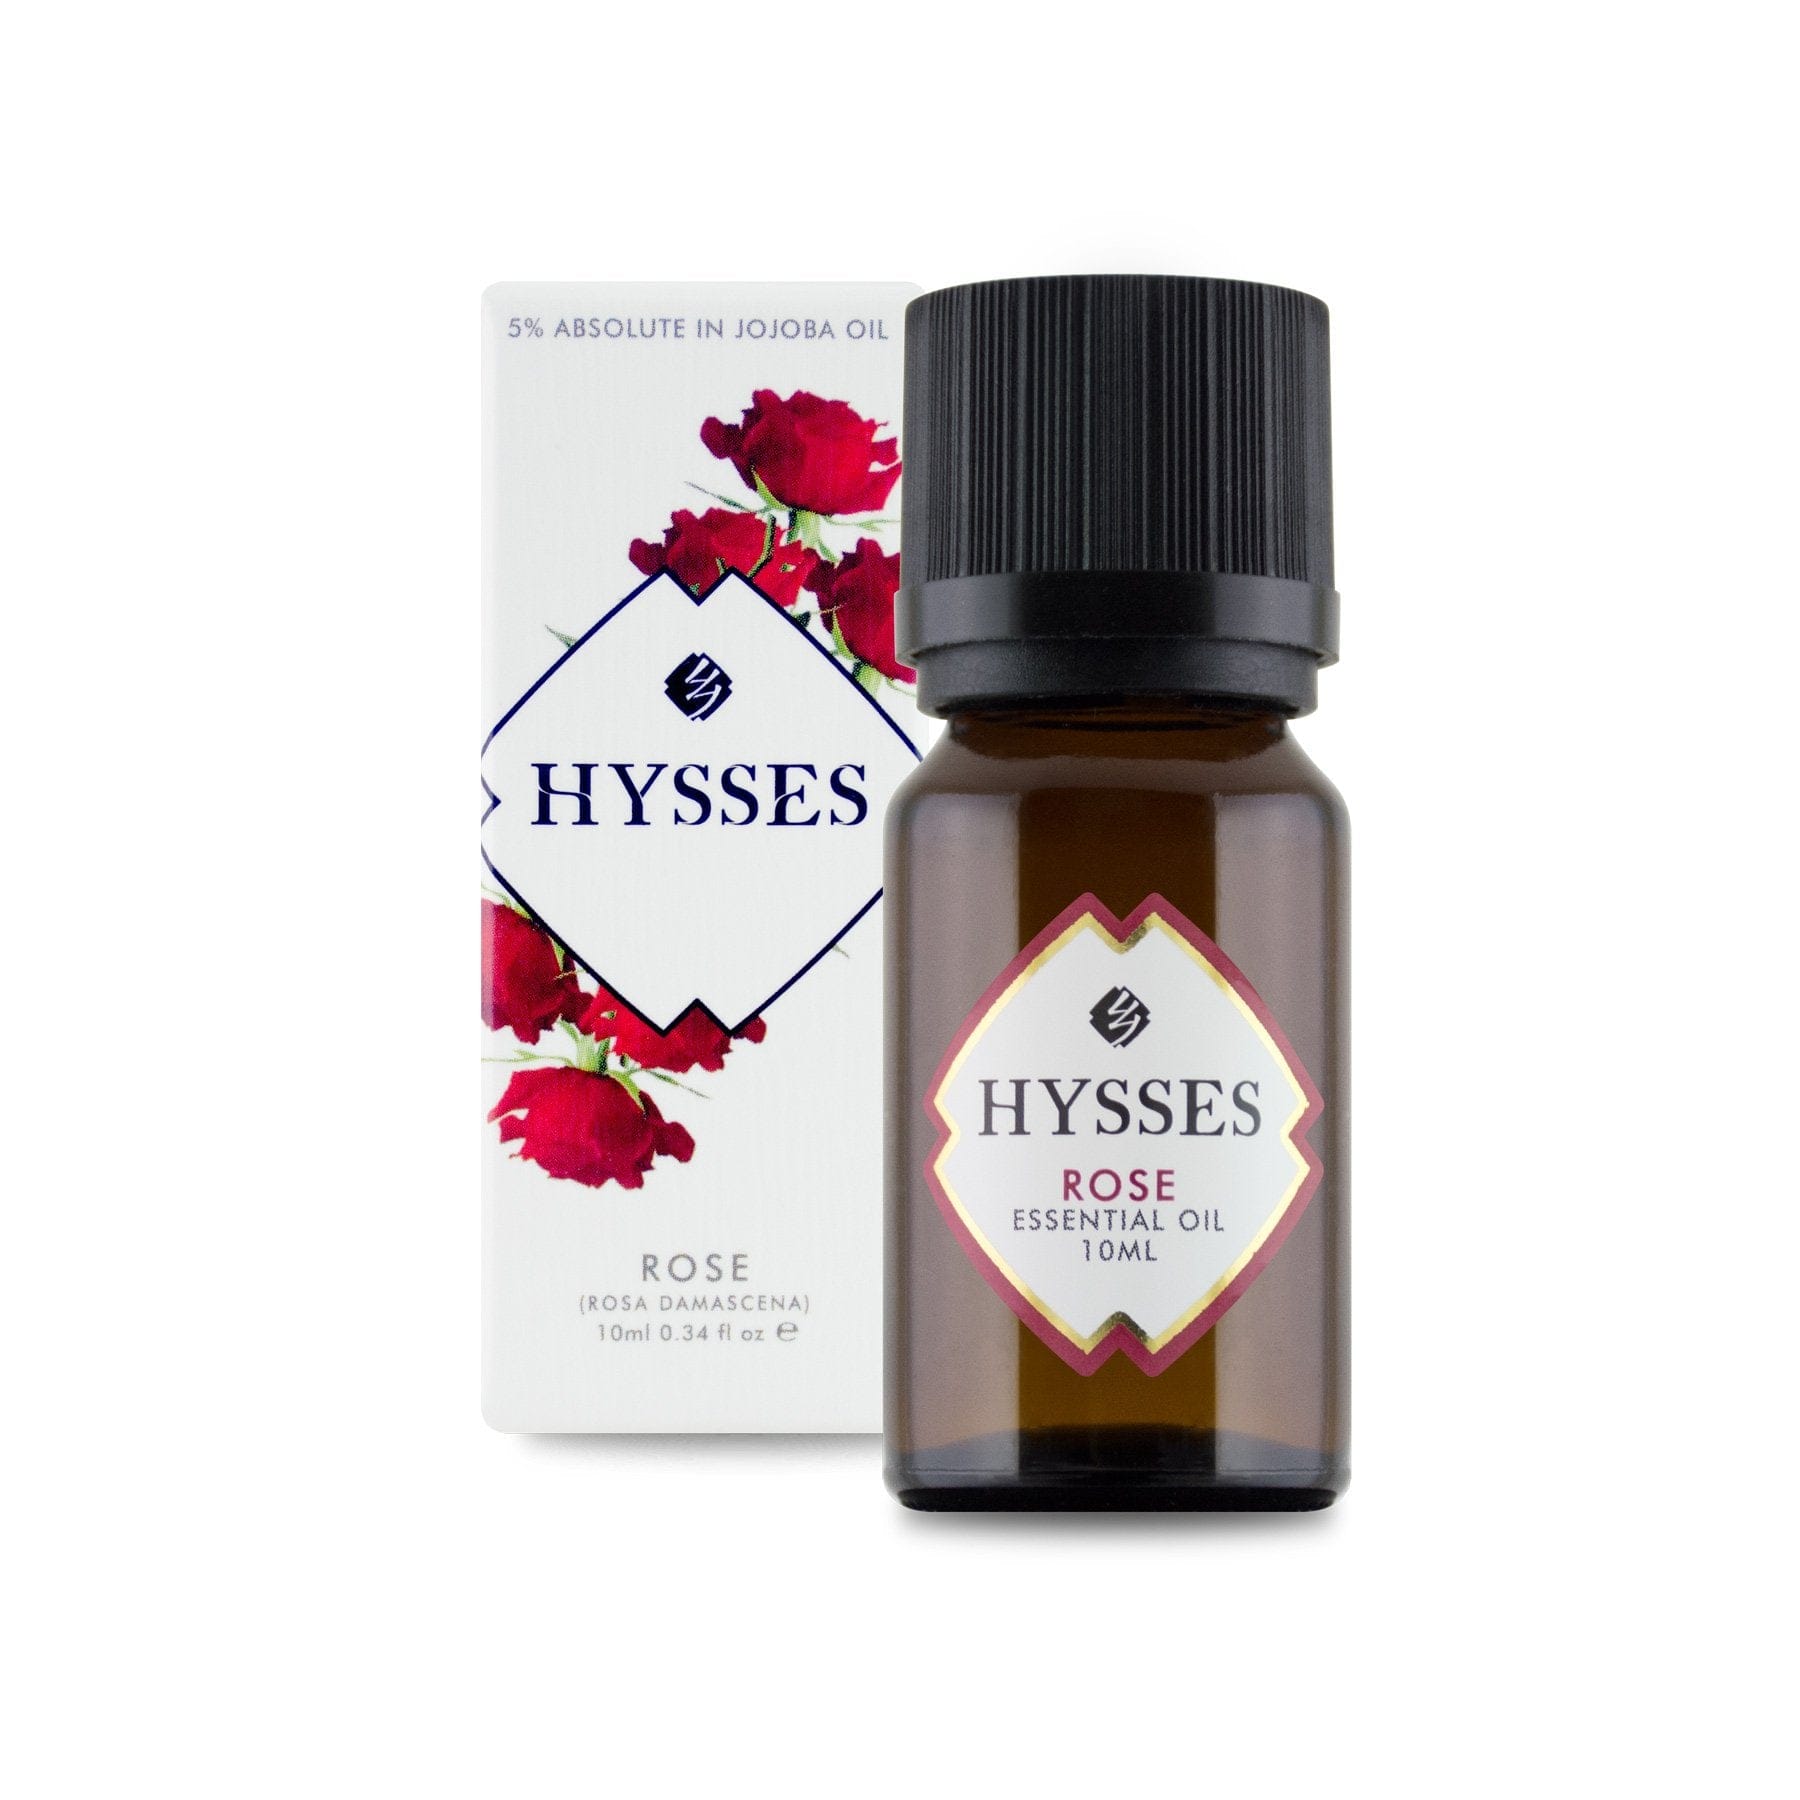 Hysses Essential Oil Essential Oil Rose (5% in Jojoba Oil), 10ml